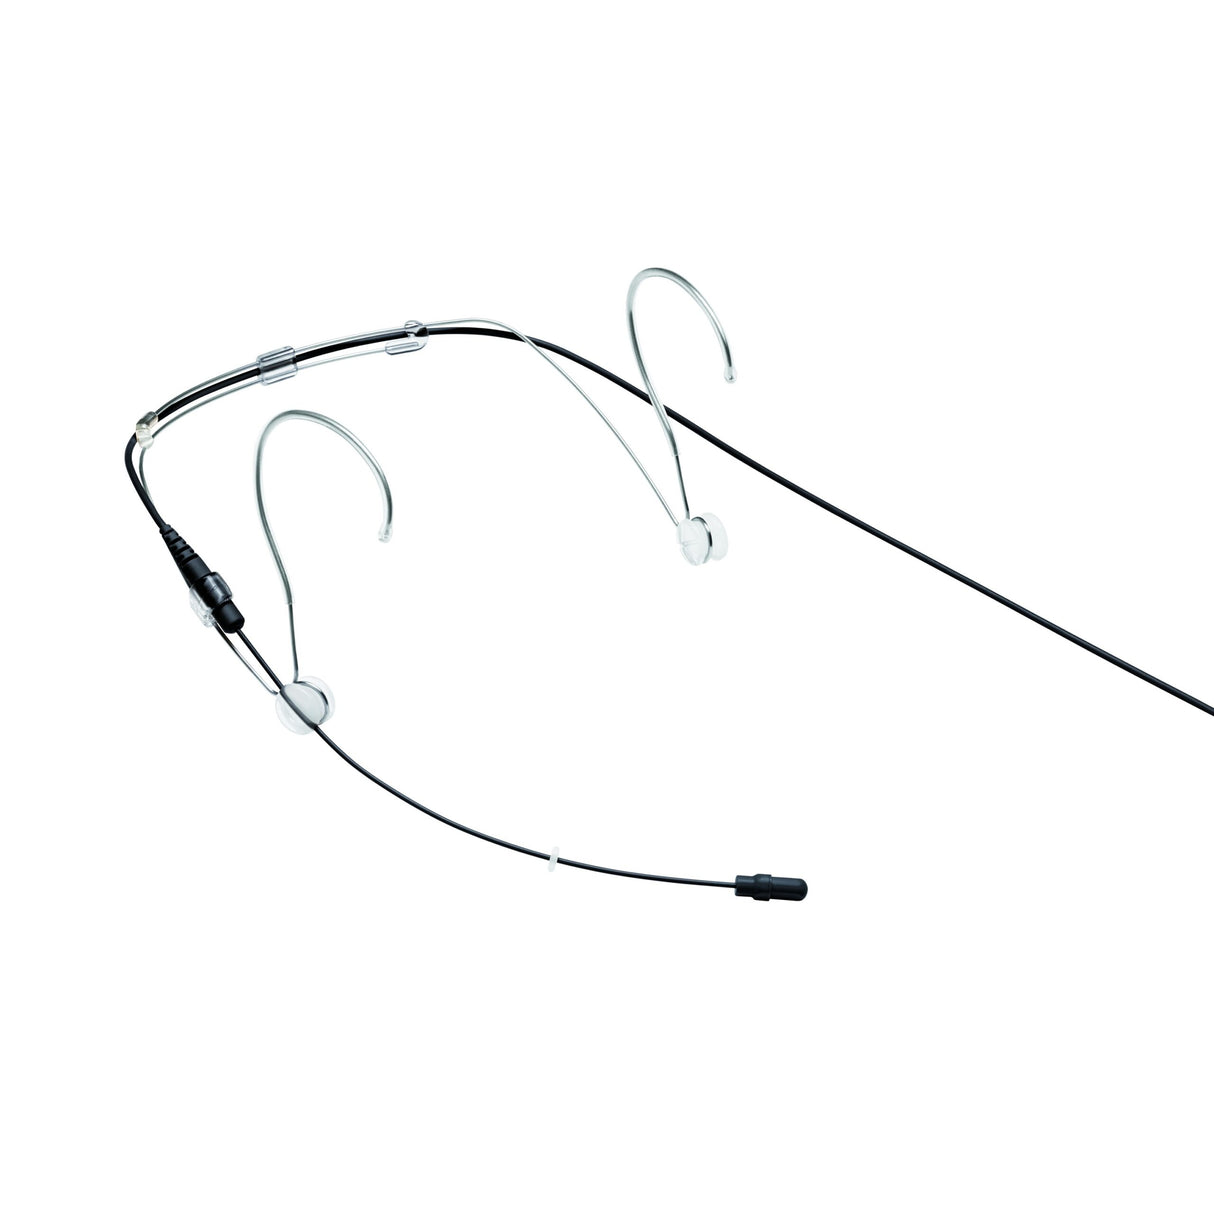 Shure DH5B/O-MTQG DuraPlex Omnidirectional Headset Microphone, Black, MTQG Connector